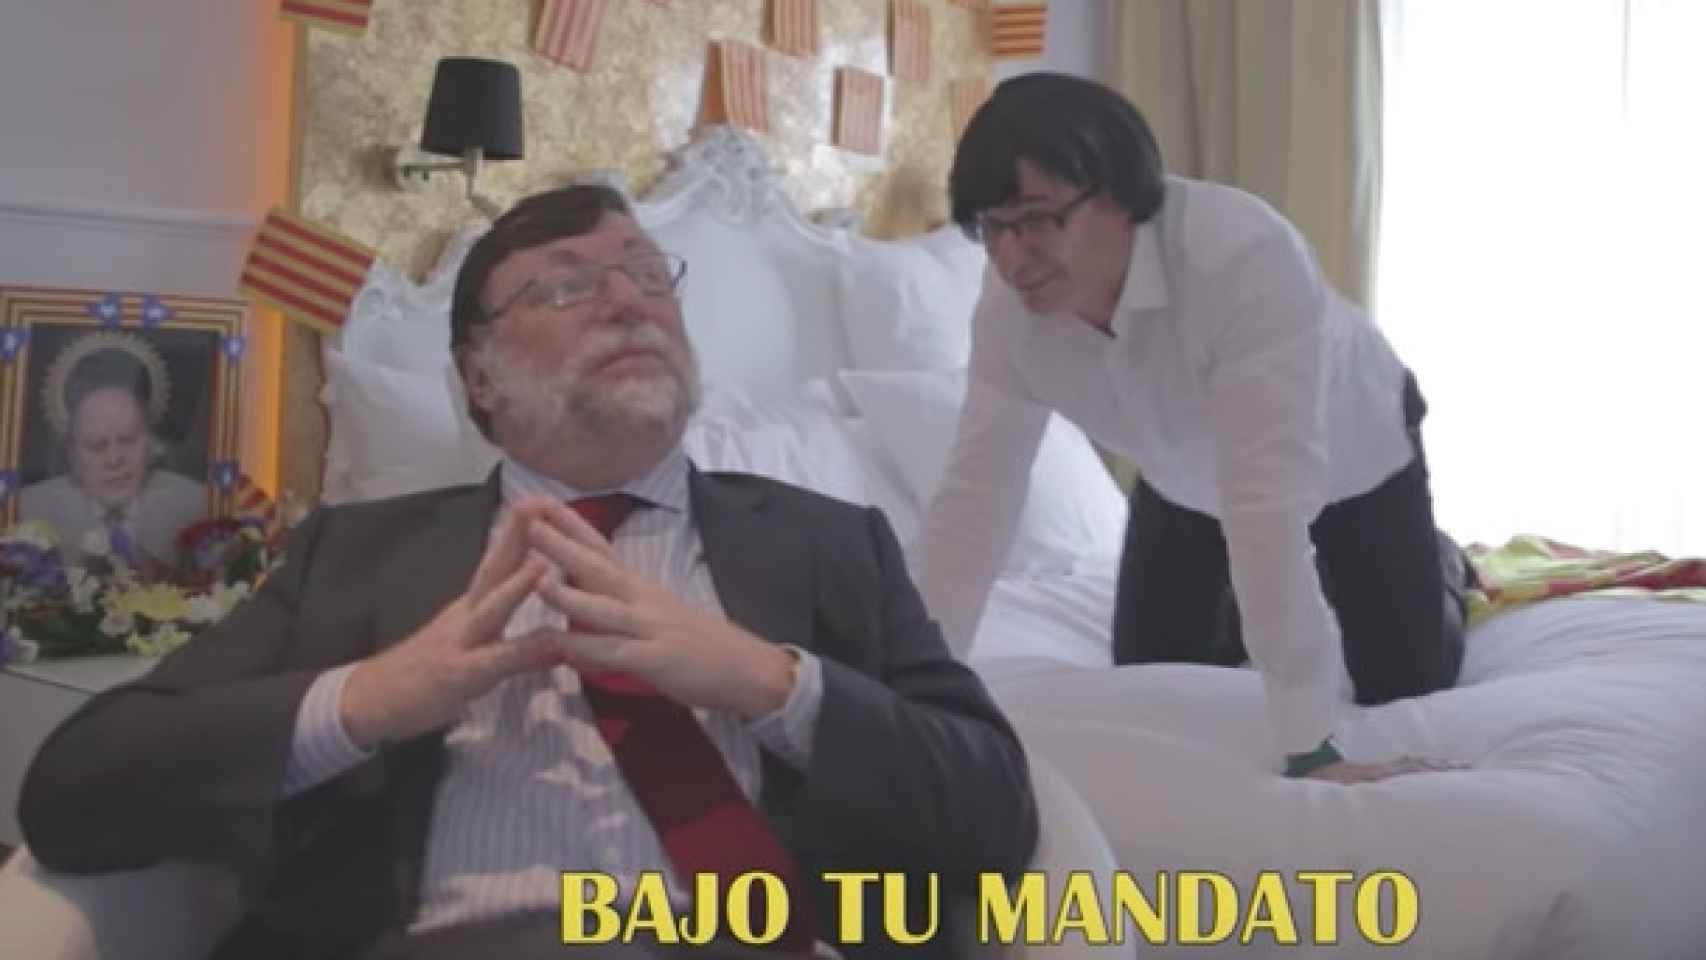 Los Morancos interpretan a Mariano Rajoy y a Carles Puigdemont / CG